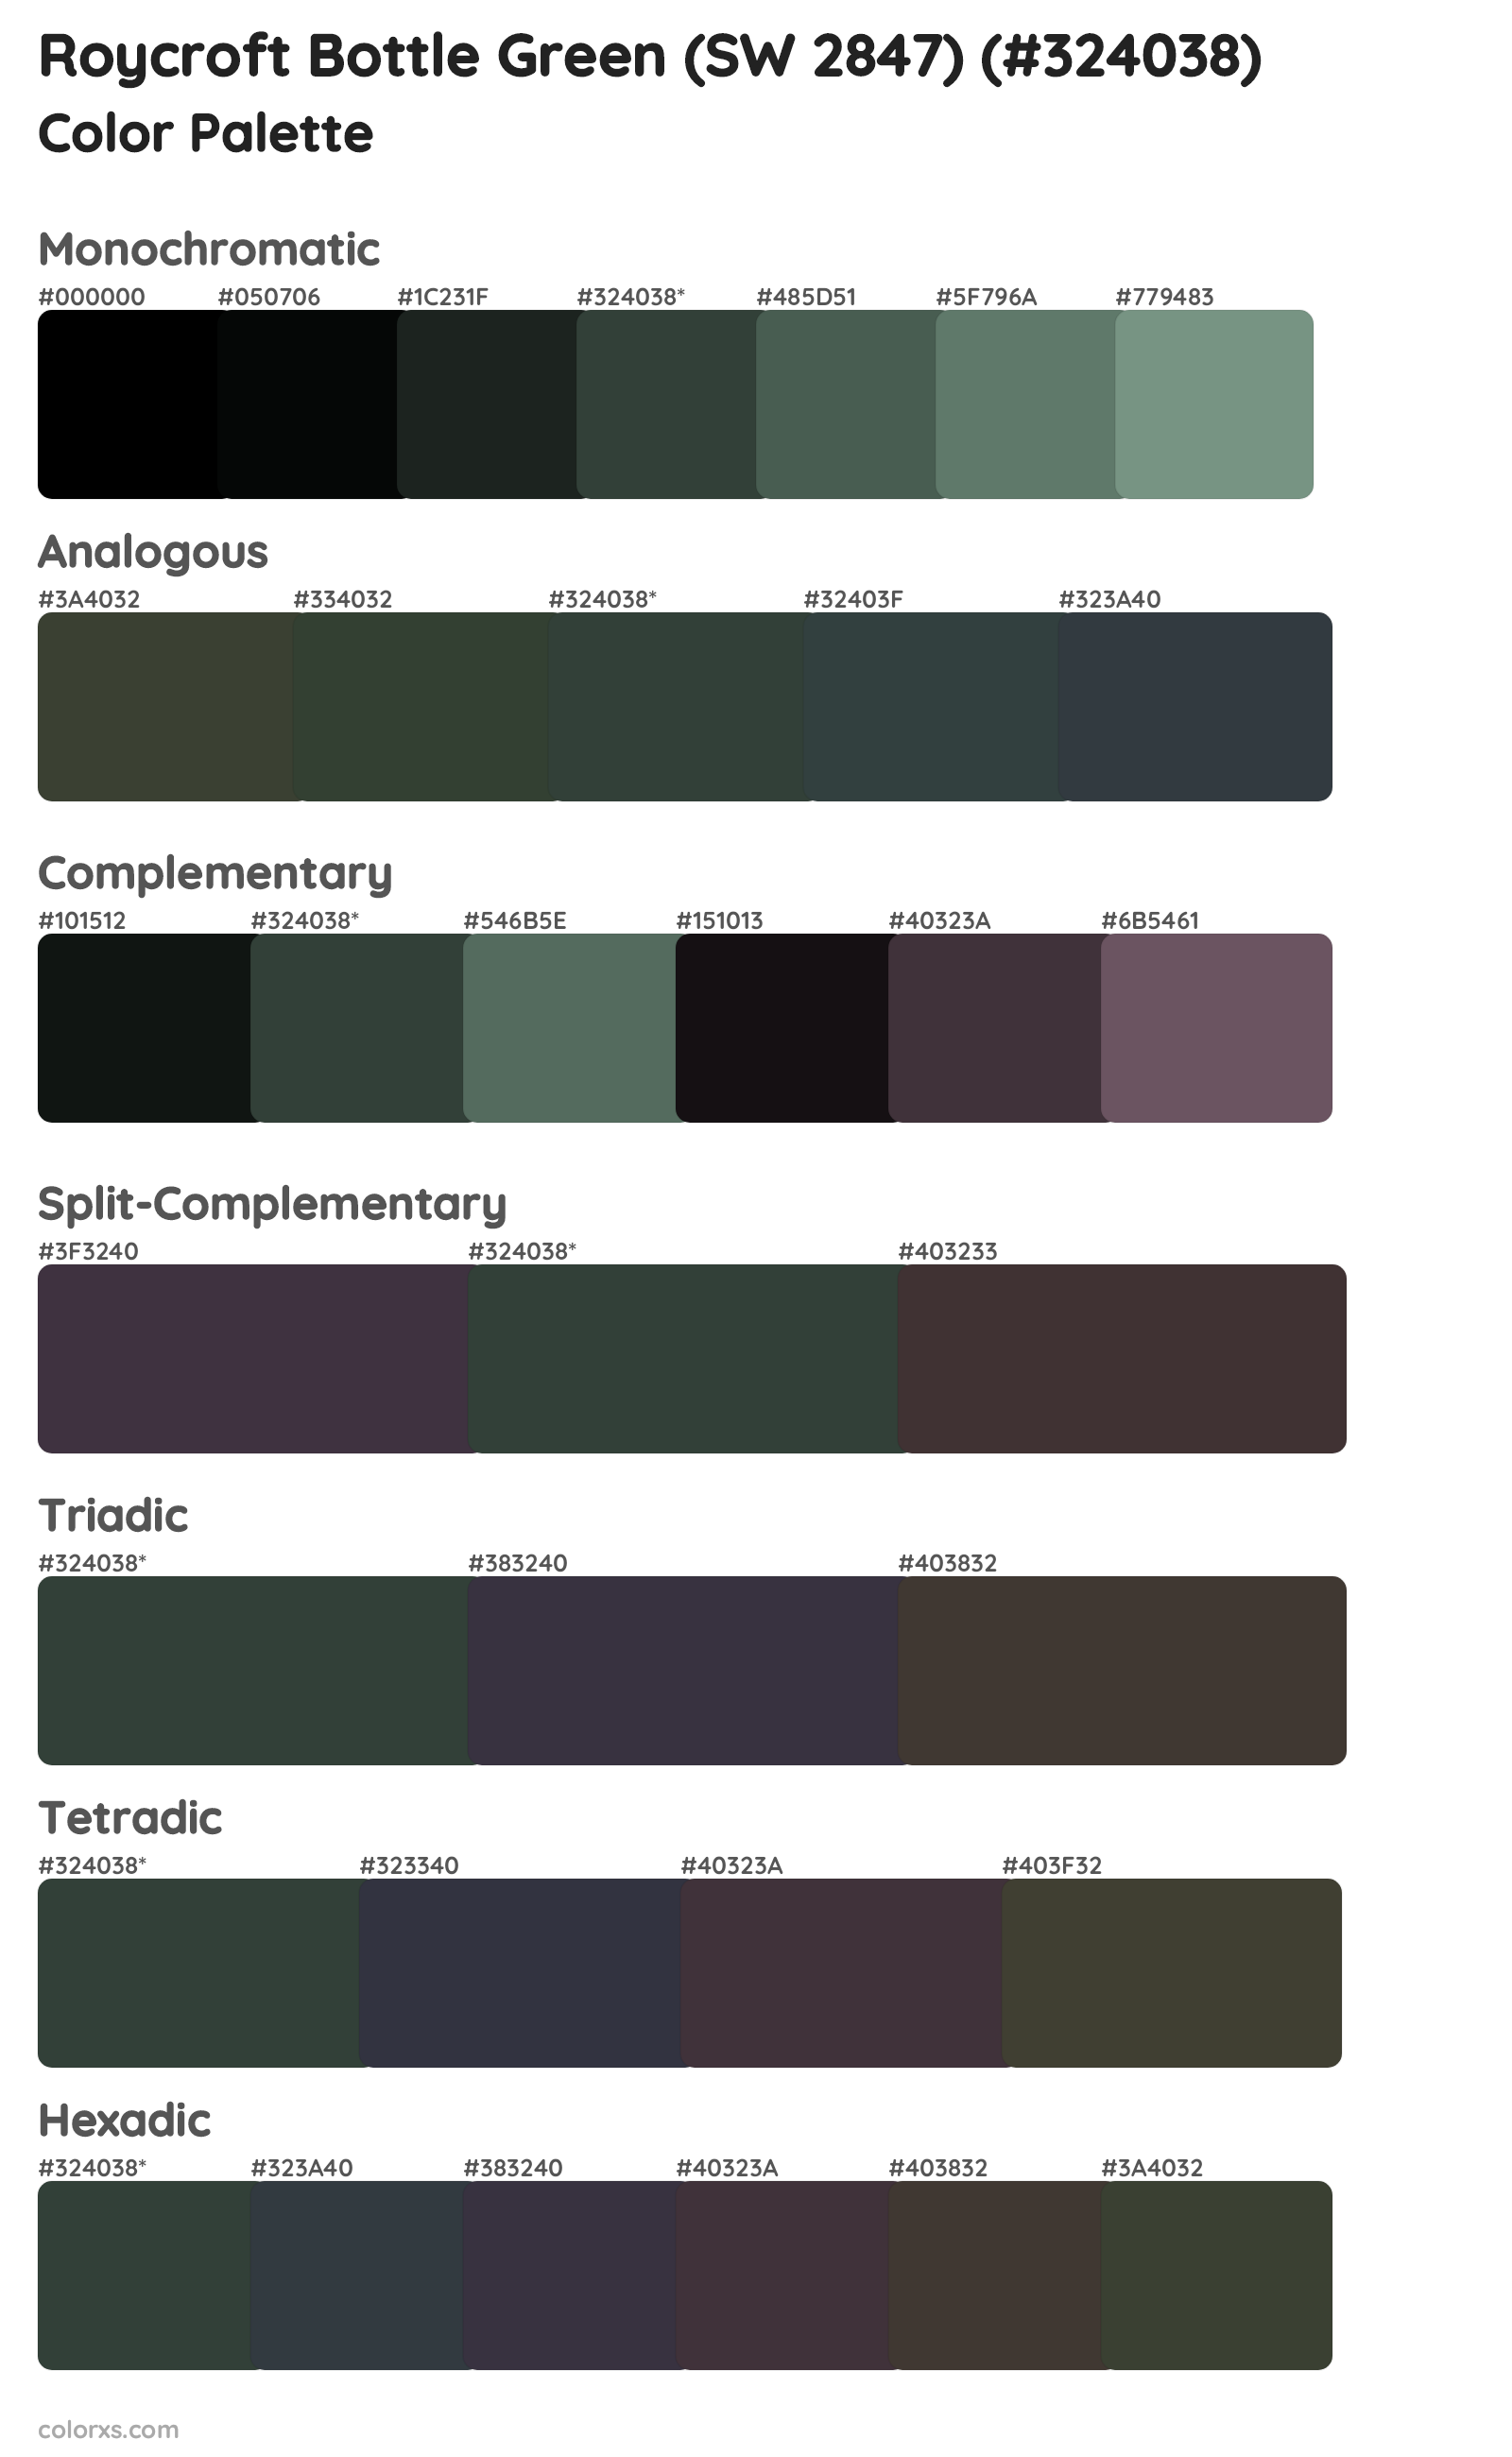 Roycroft Bottle Green (SW 2847) Color Scheme Palettes